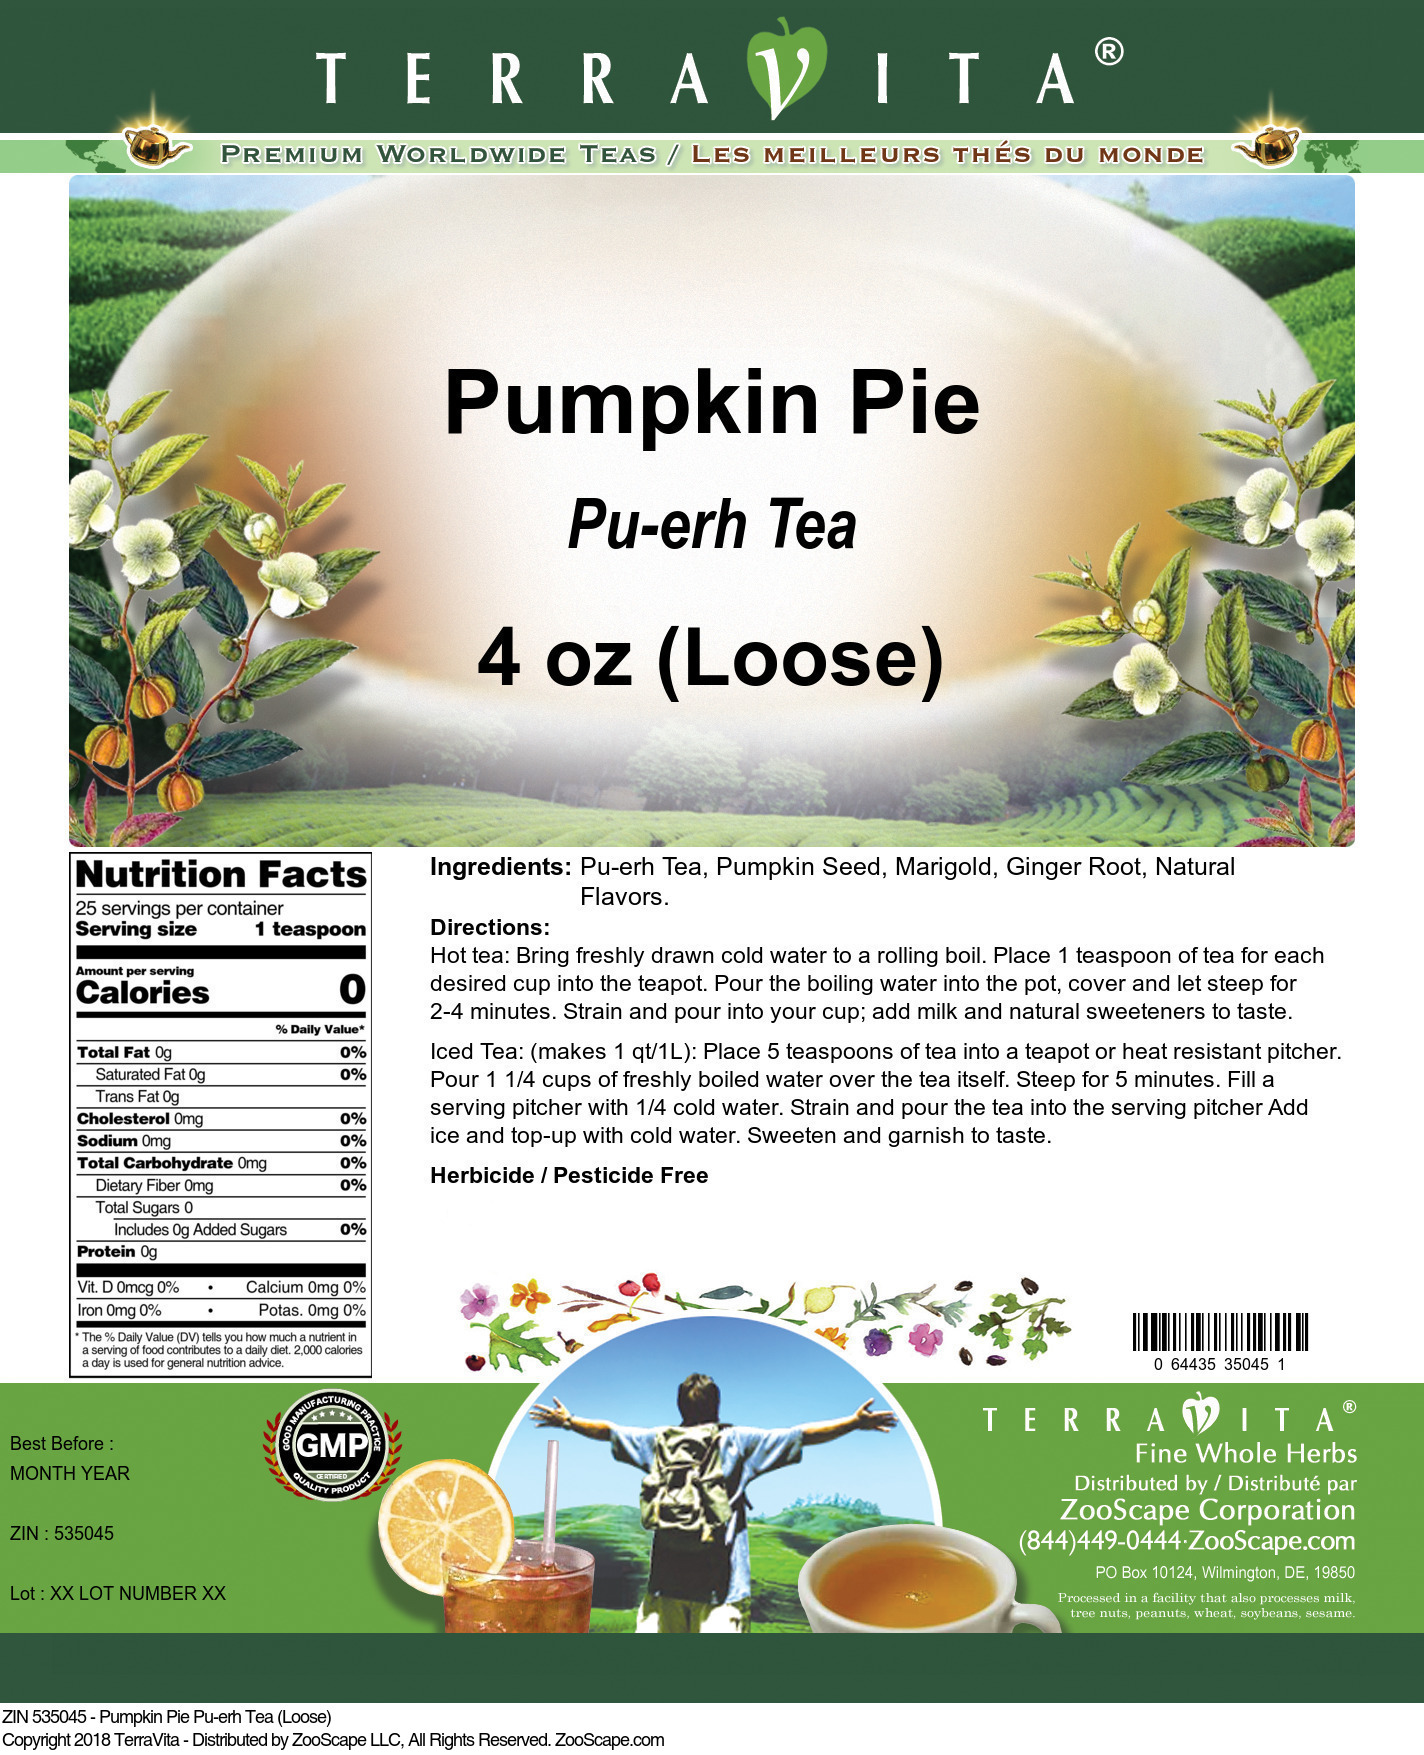 Pumpkin Pie Pu-erh Tea (Loose) - Label